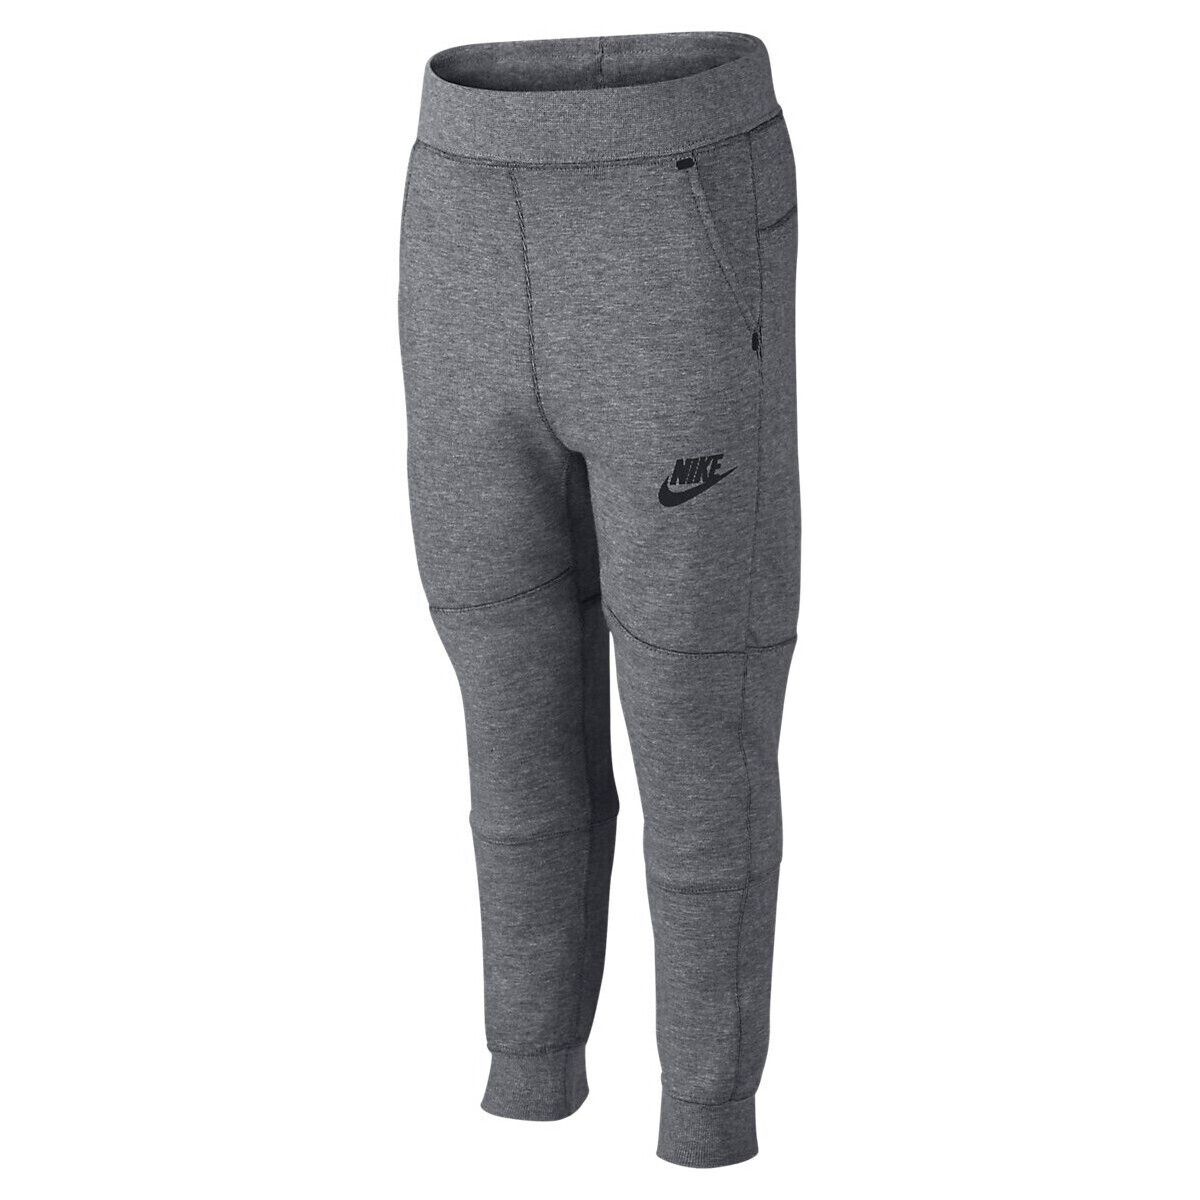 Vêtements Garçon Pantalons de survêtement Nike Enfant Cadet Tech Fleece Gris